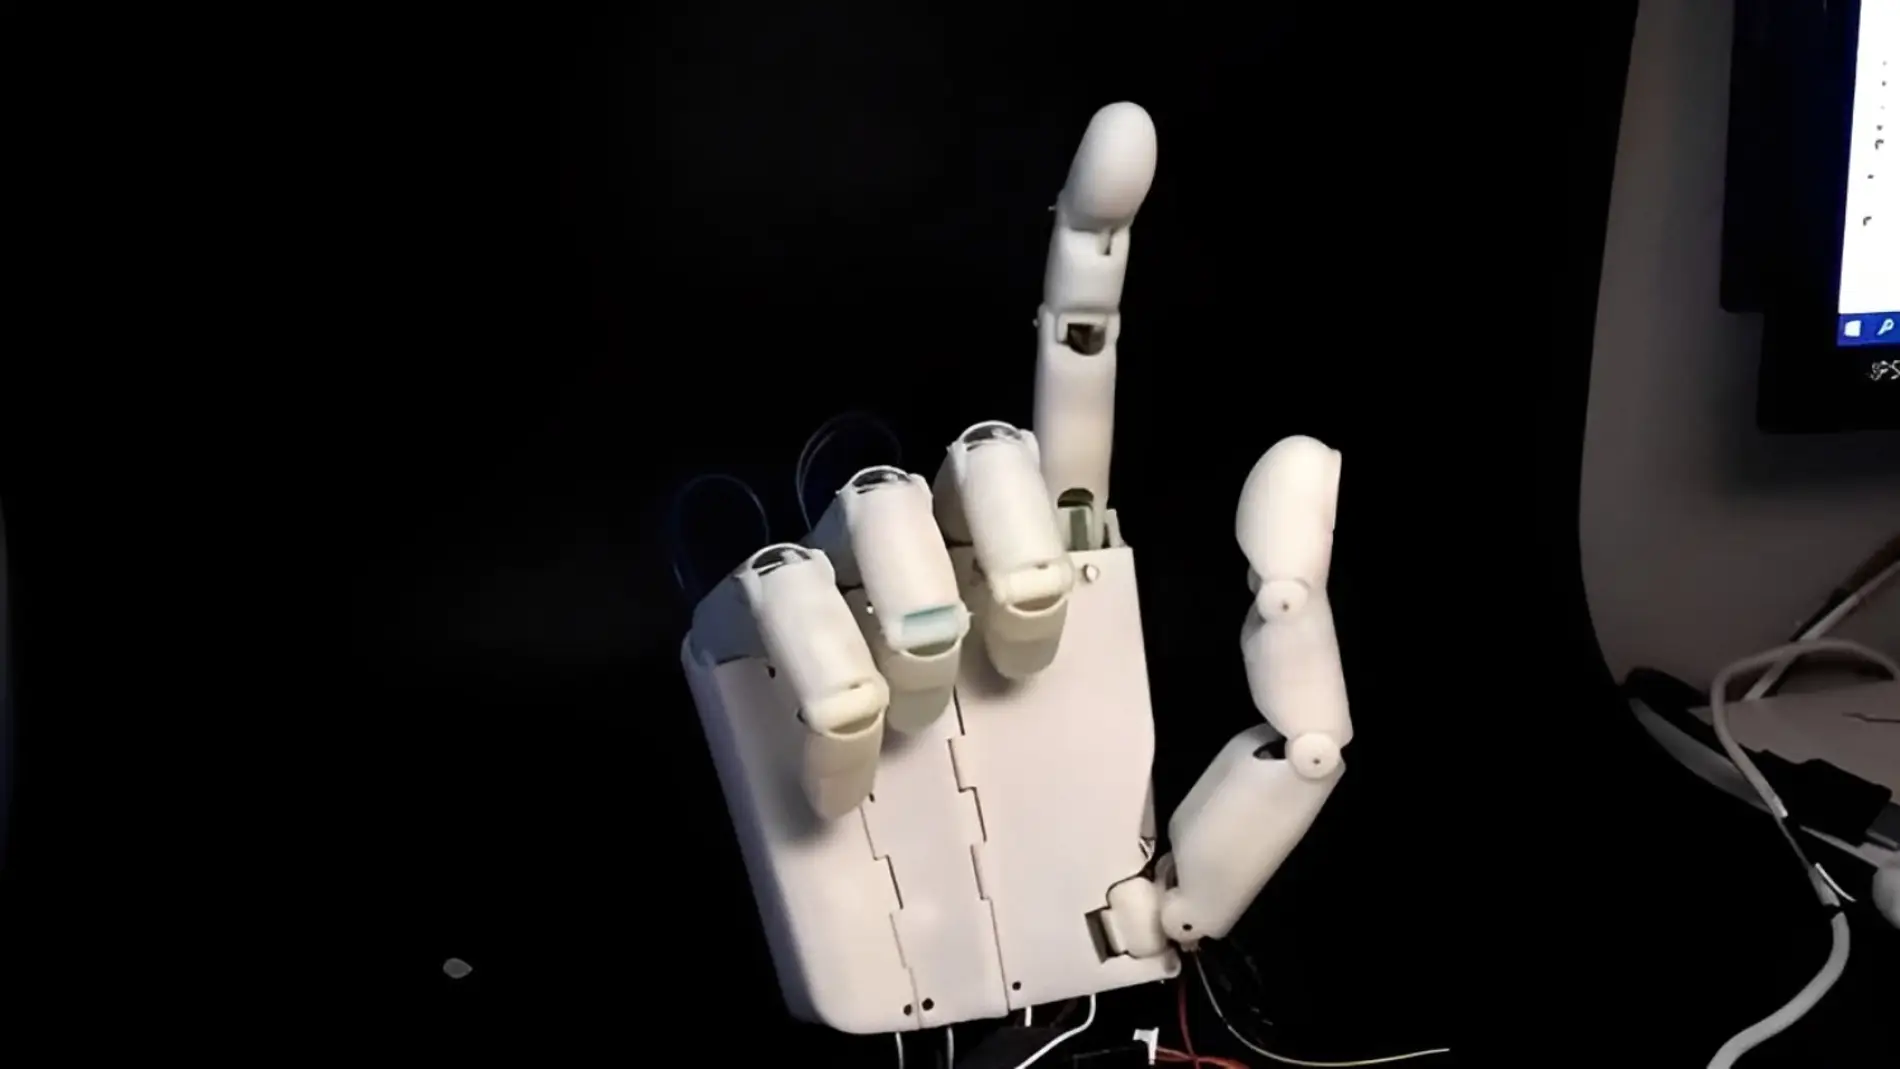 Disenan una mano robotica para una interaccion mas amigable entre humano y robot